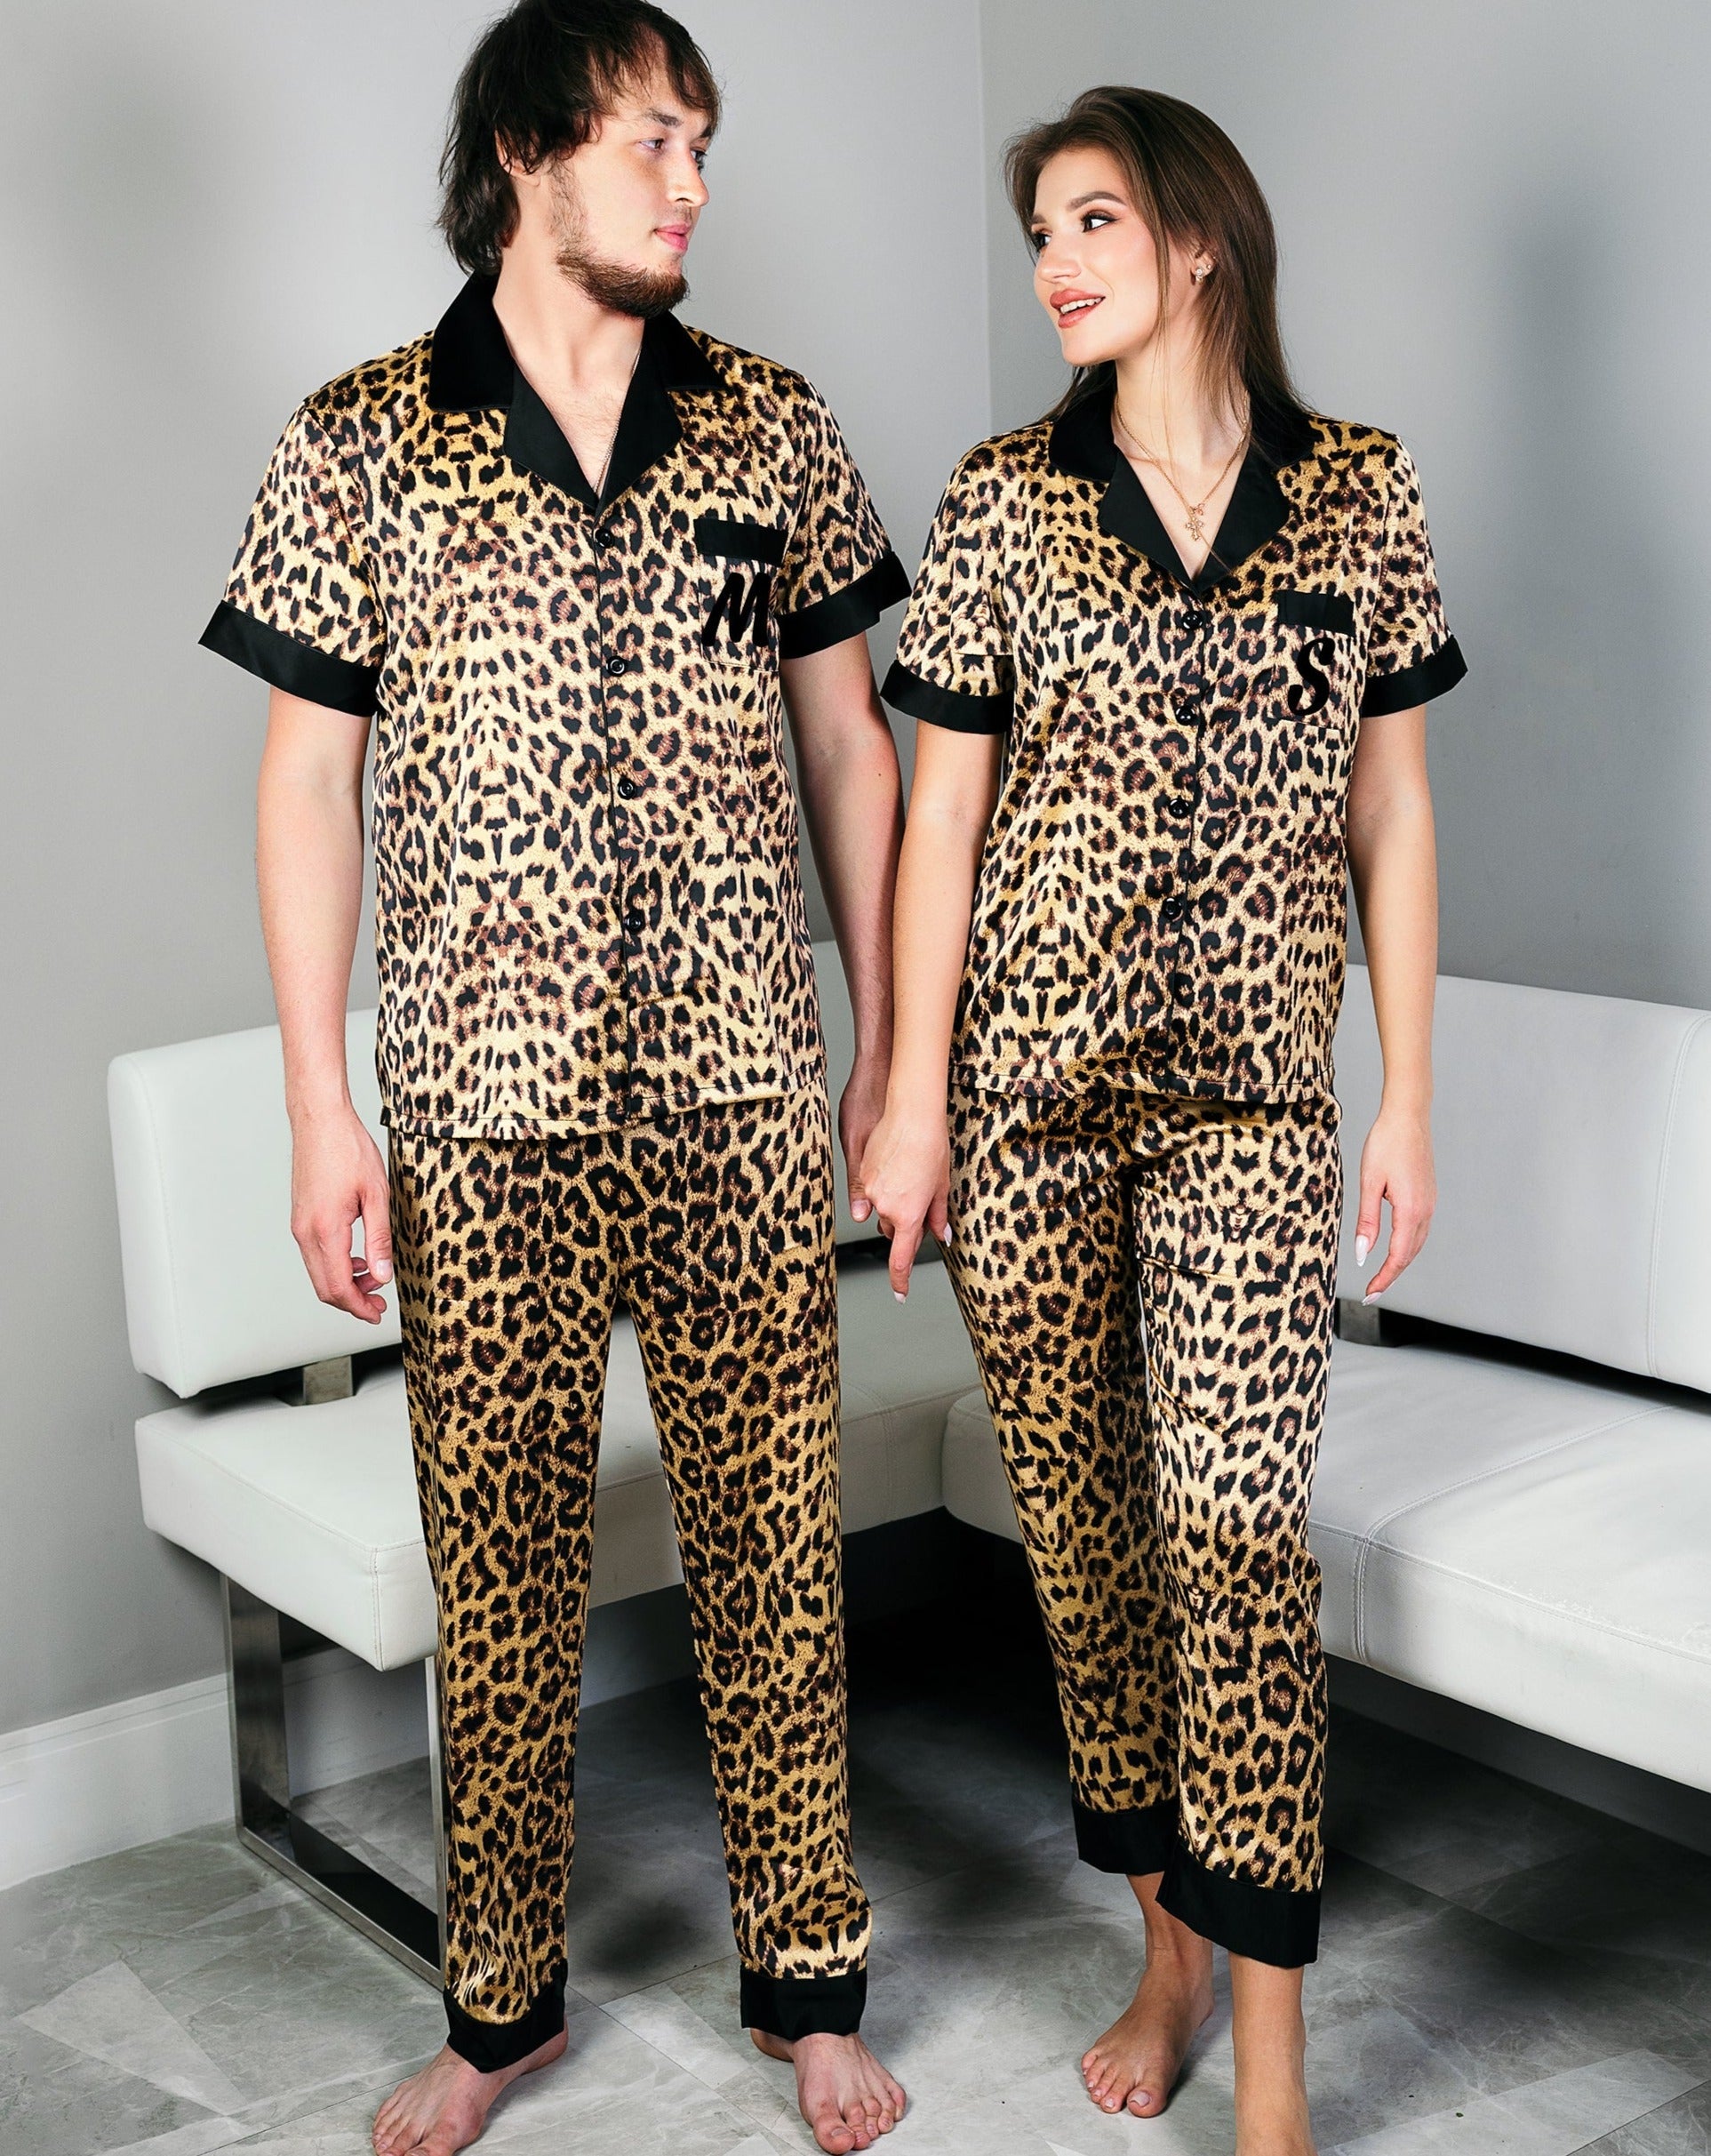 Leopard Pajamas Set Pajamas – Pjs, Gifts Gift, Sunny gift Boutique Satin Wedding Anniversary Pajamas Xmas Miami Honeymoon Custom Couple, for